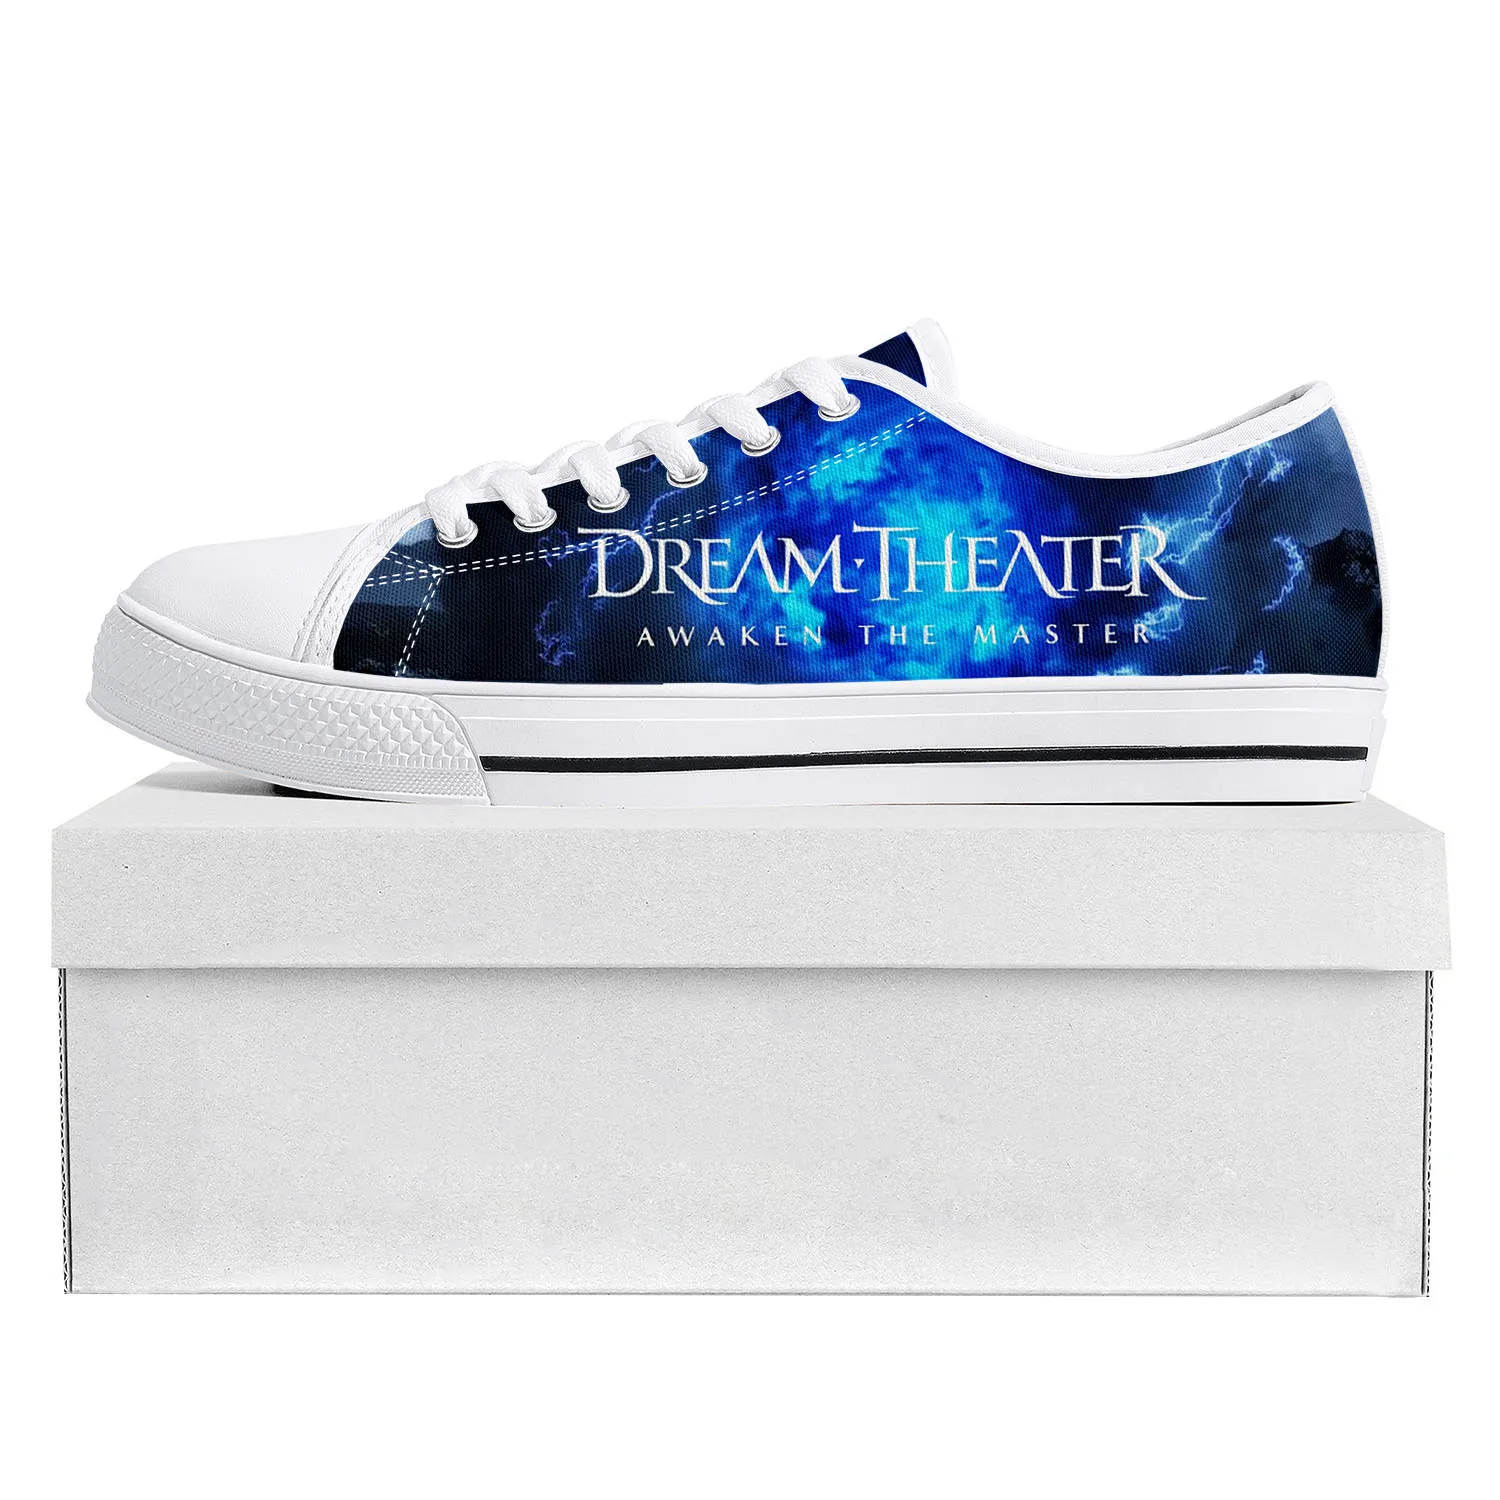 Dream Theater Rock Pop, низкие Высококачественные кроссовки, мужские Женские подростковые парусиновые кроссовки, повседневная обувь для пары, Обувь на заказ Изображение 1